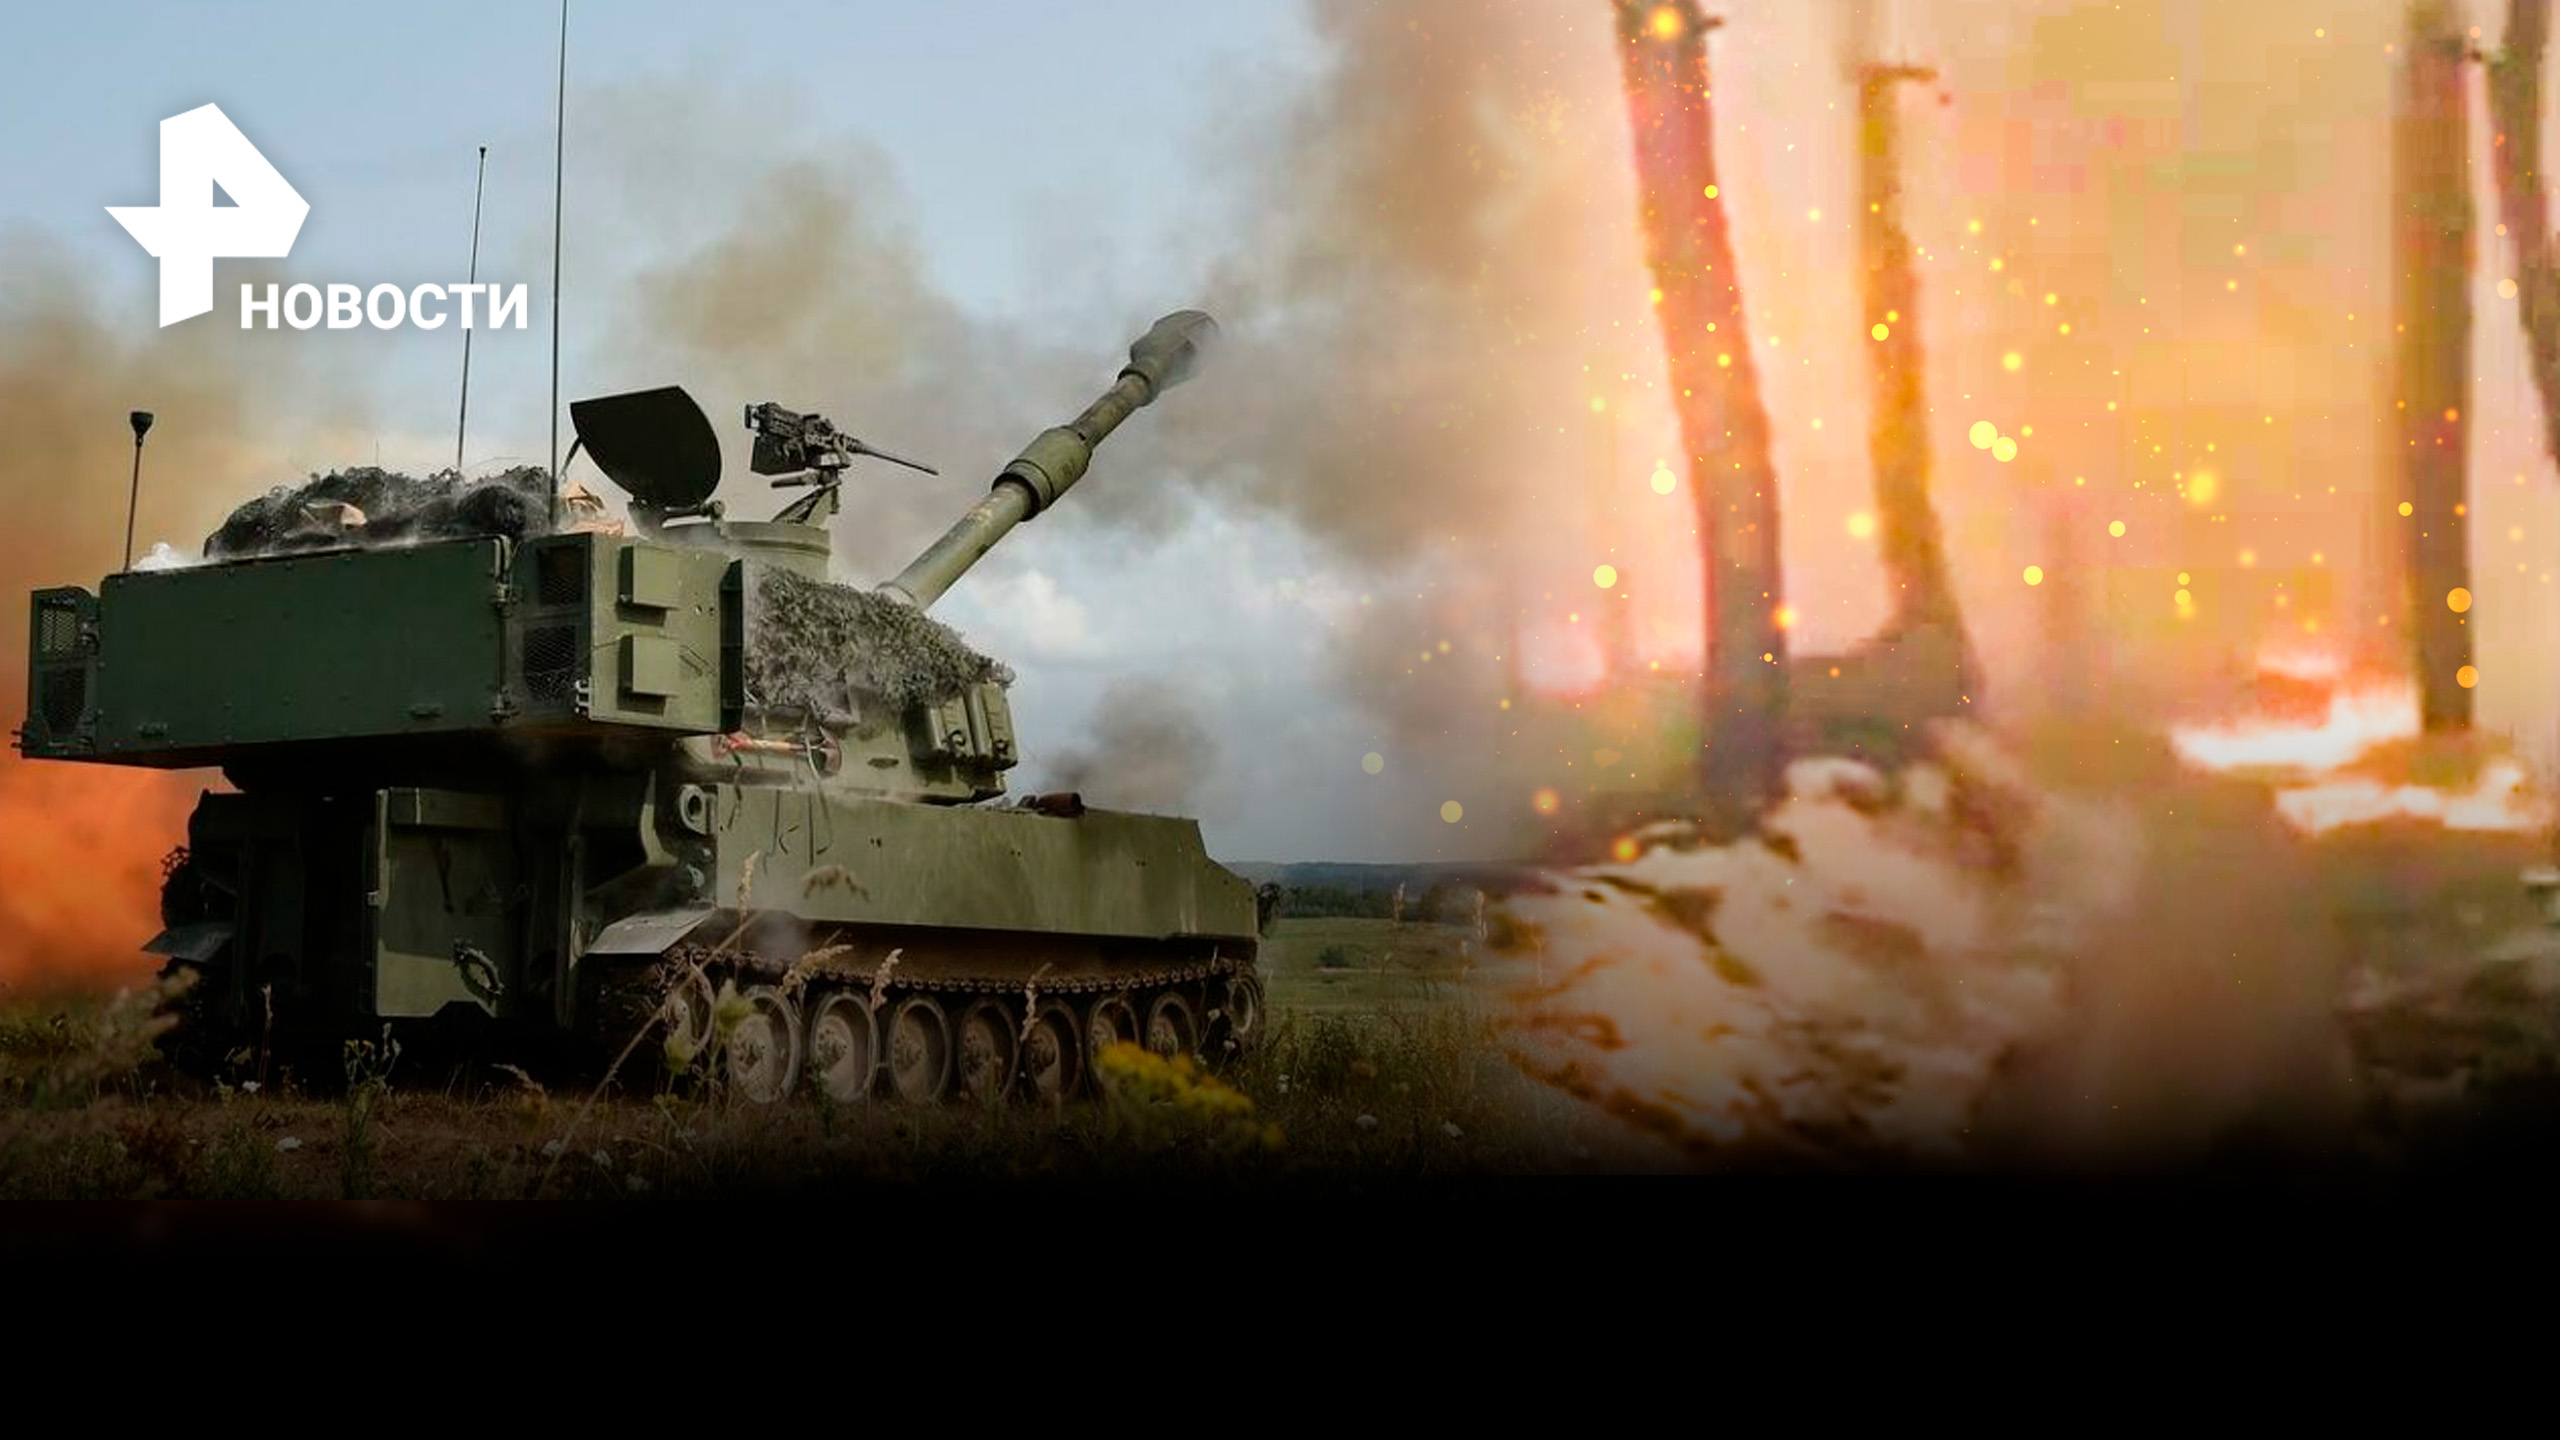 "Вот так горят наши позиции": боец ВСУ показал обстрелянные союзными войсками окопы / РЕН Новости